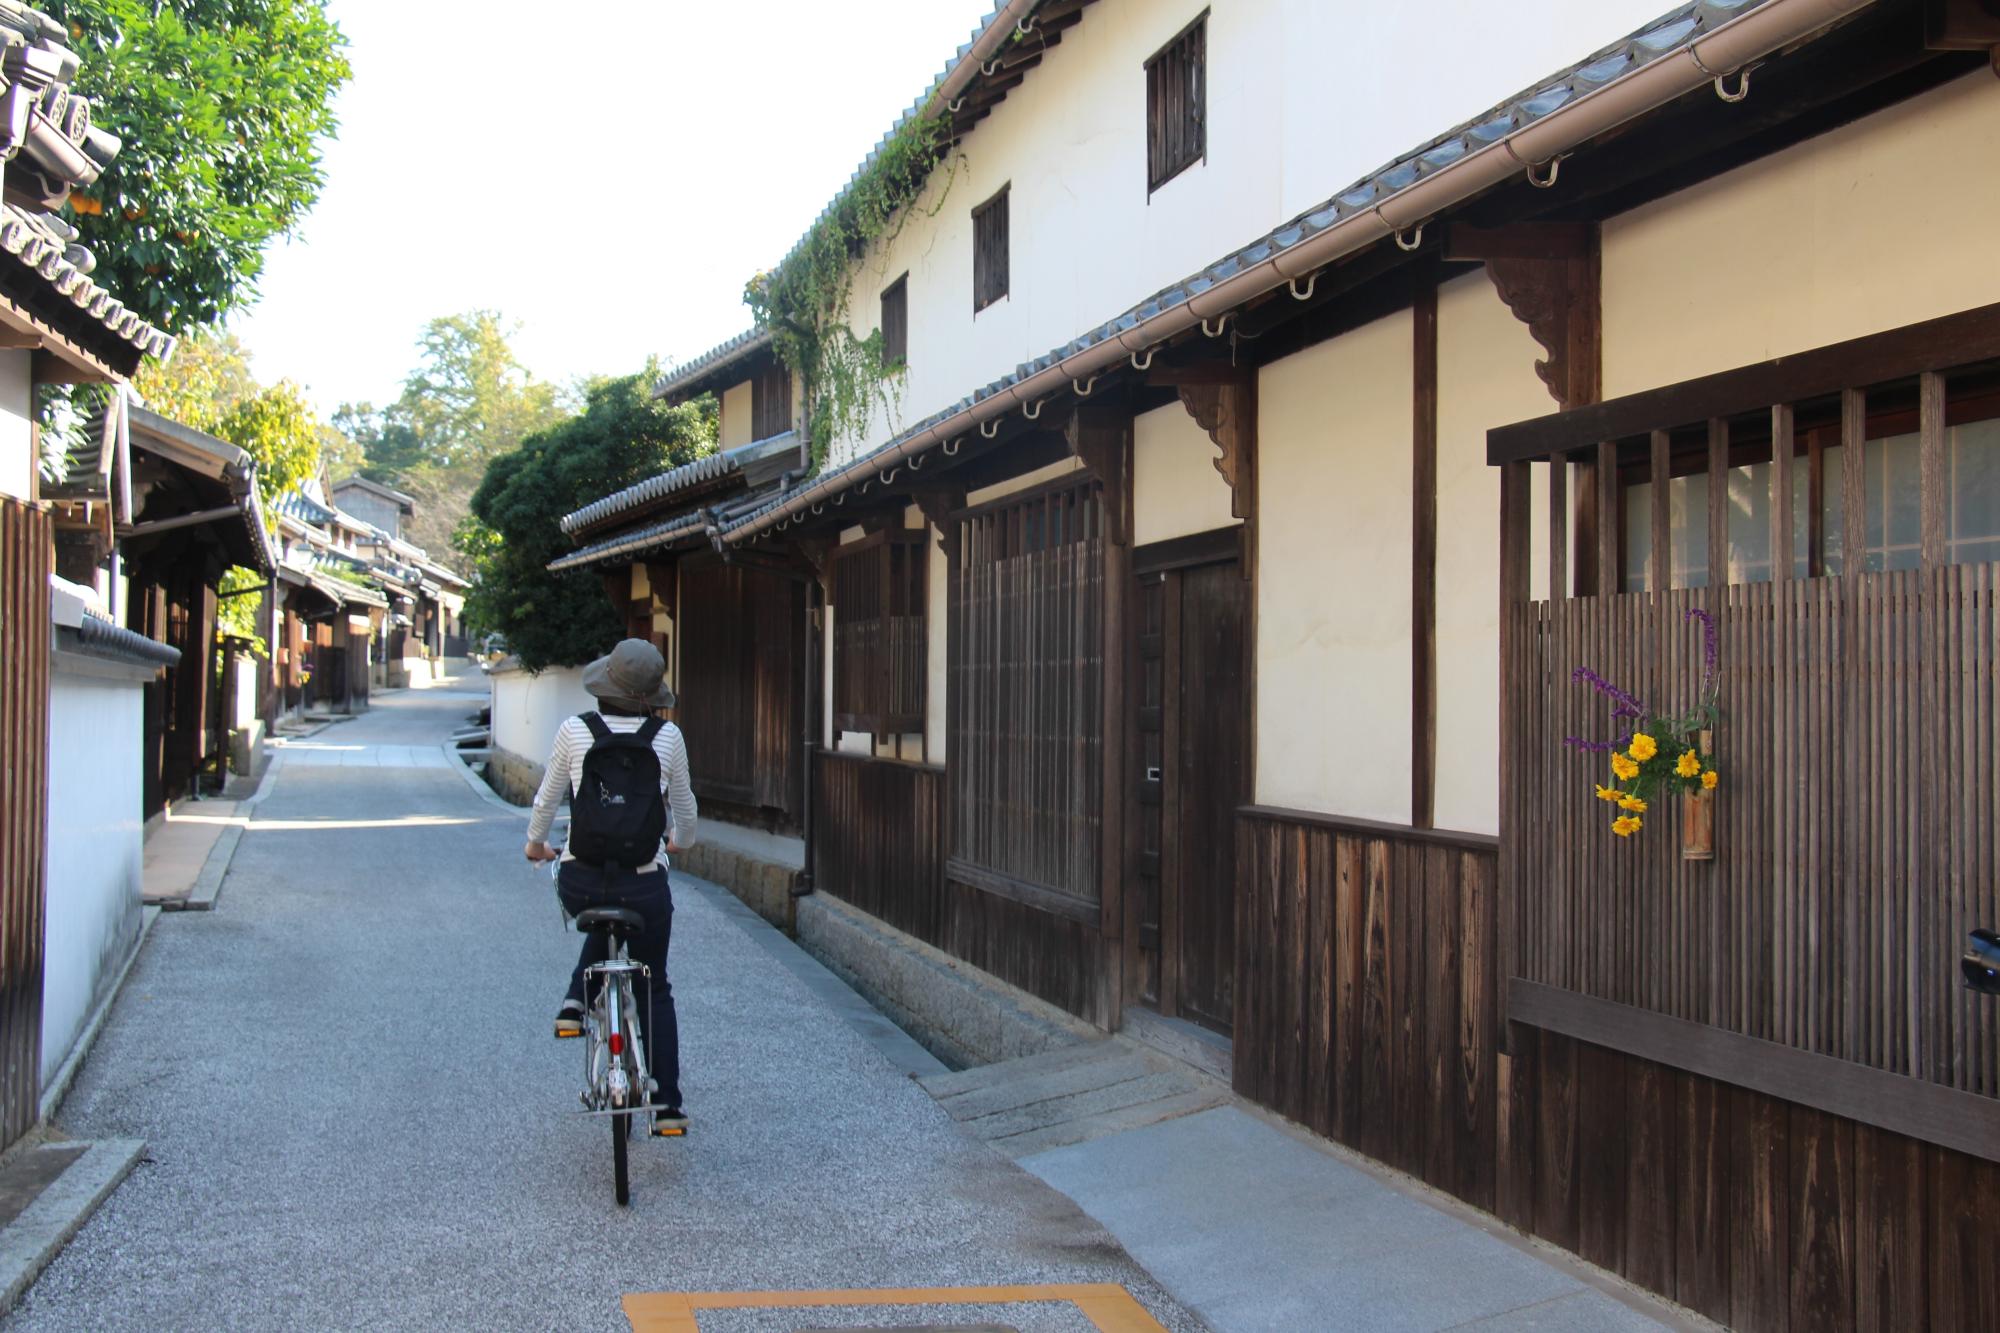 伝統的な建物がならぶ集落の路地を女性が自転車で通る